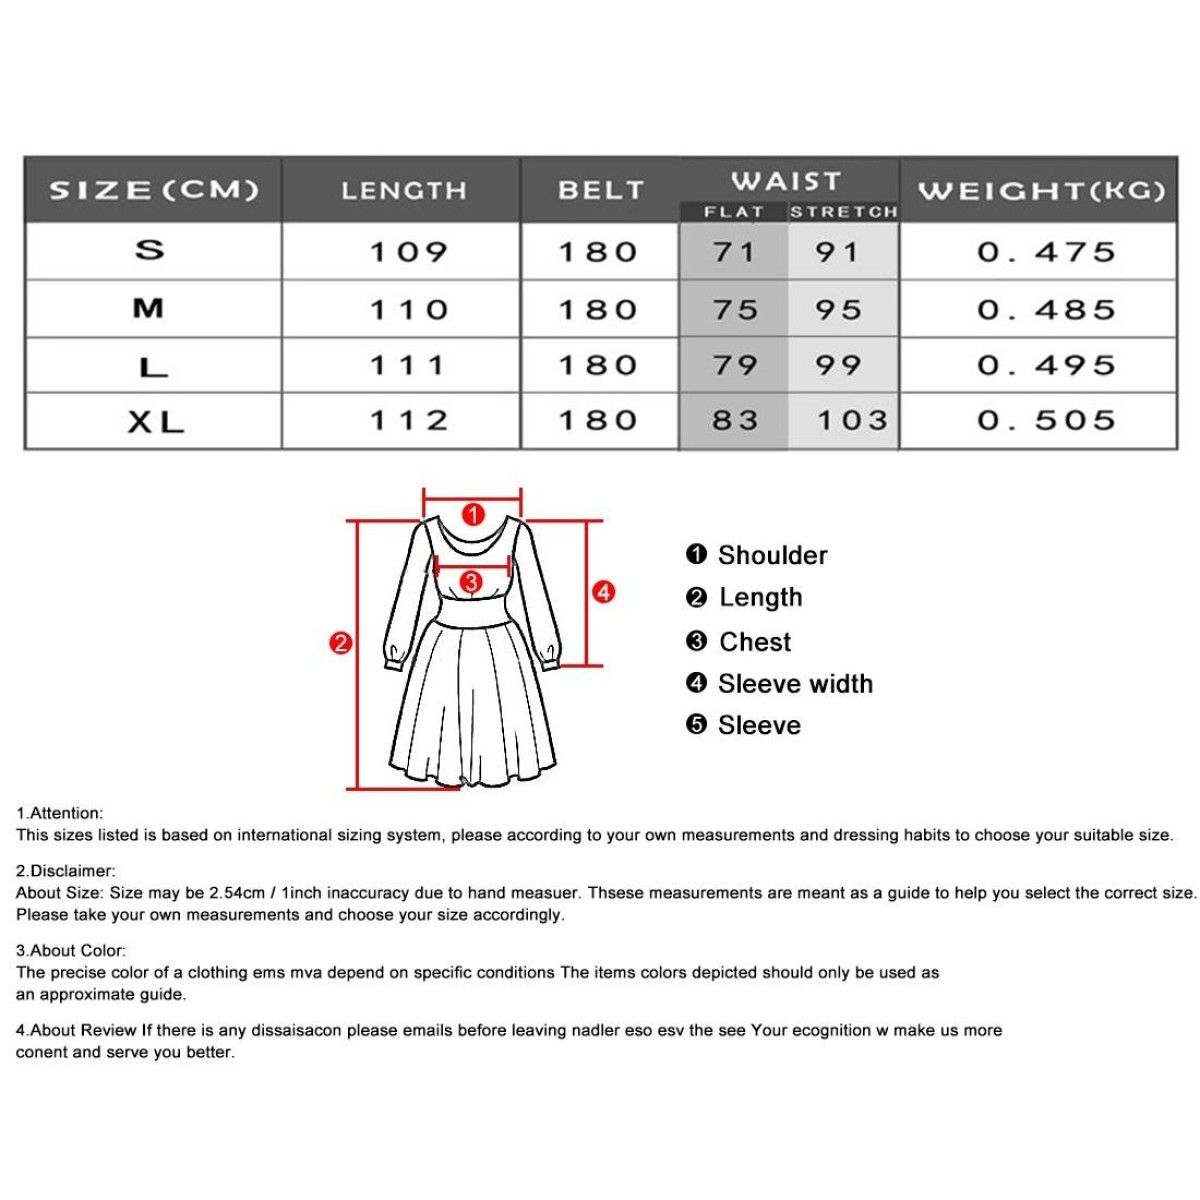 Ladies Feather Print Lace Slit Dress (Color:80212006 Size:L)